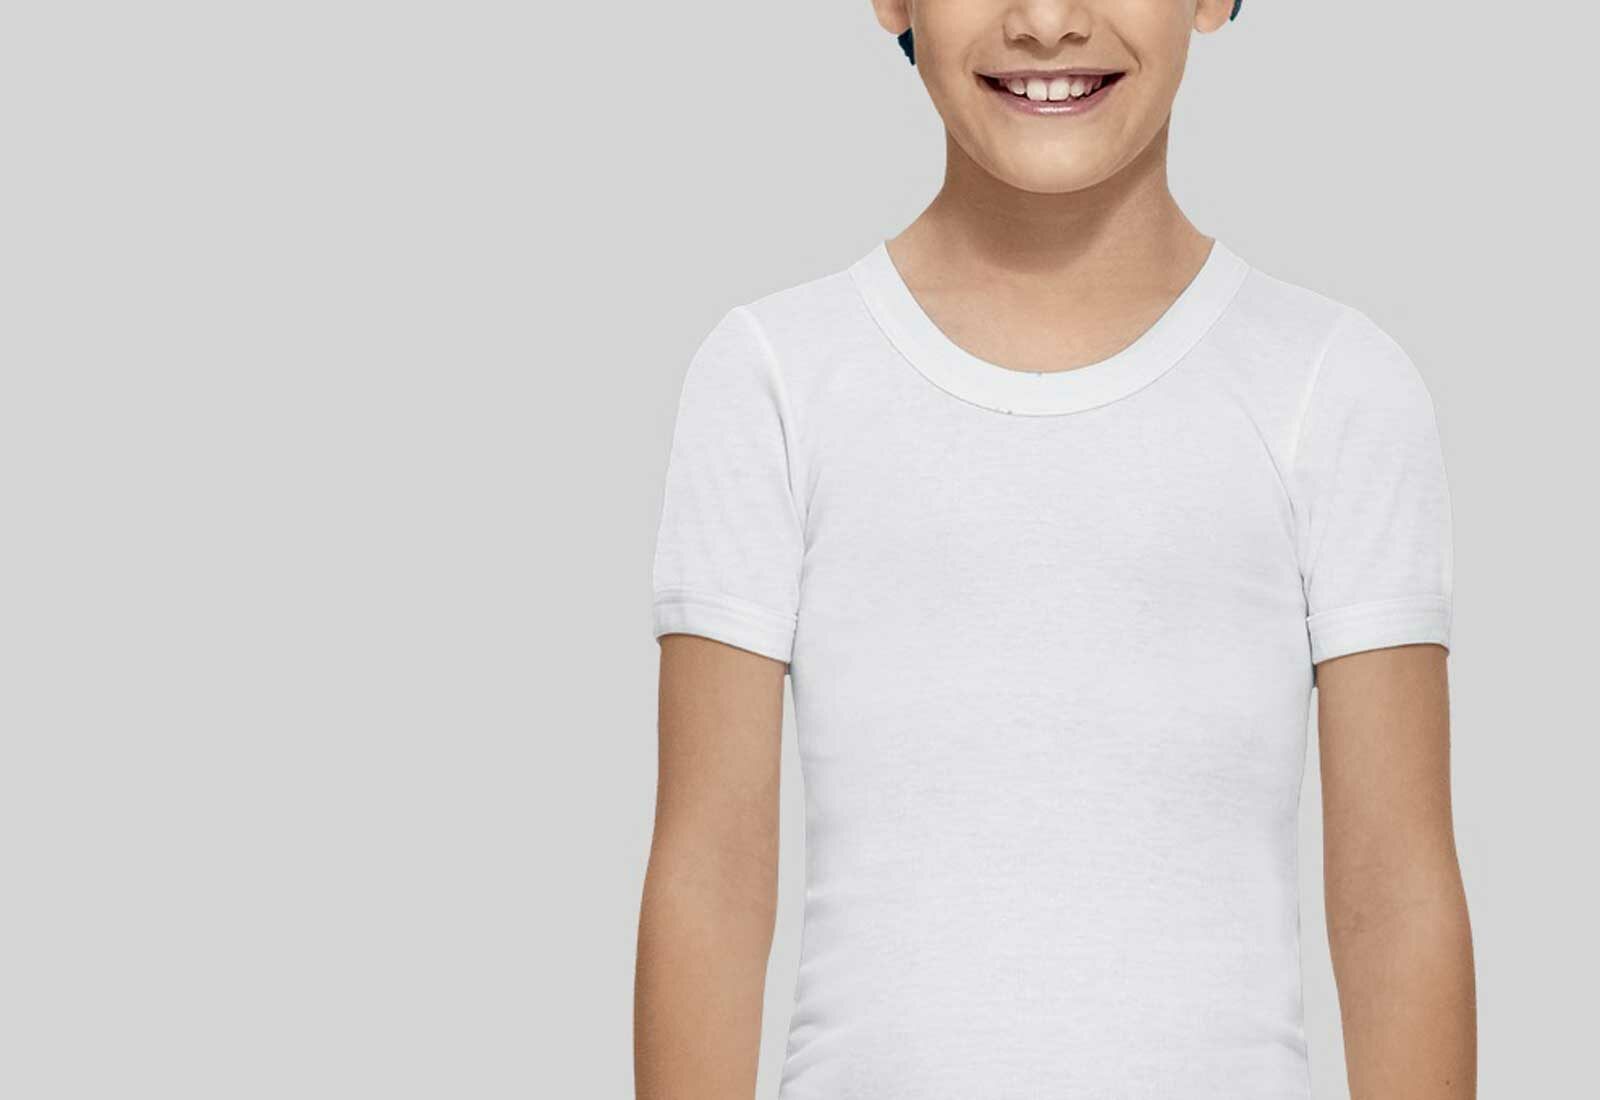 Cómo elegir las mejores camisetas térmicas de niño